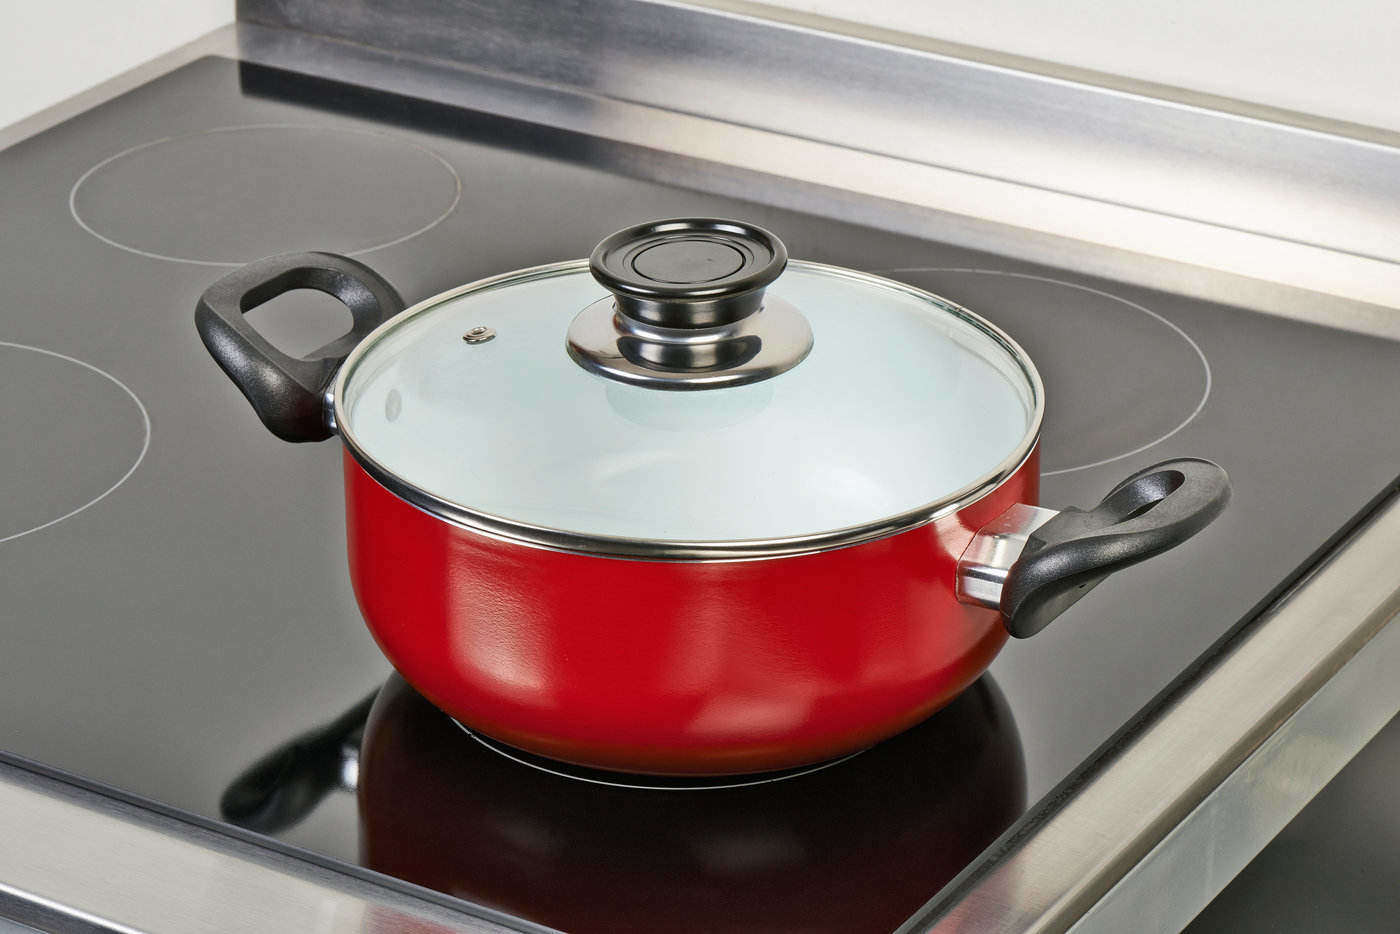 Red ceramic pan